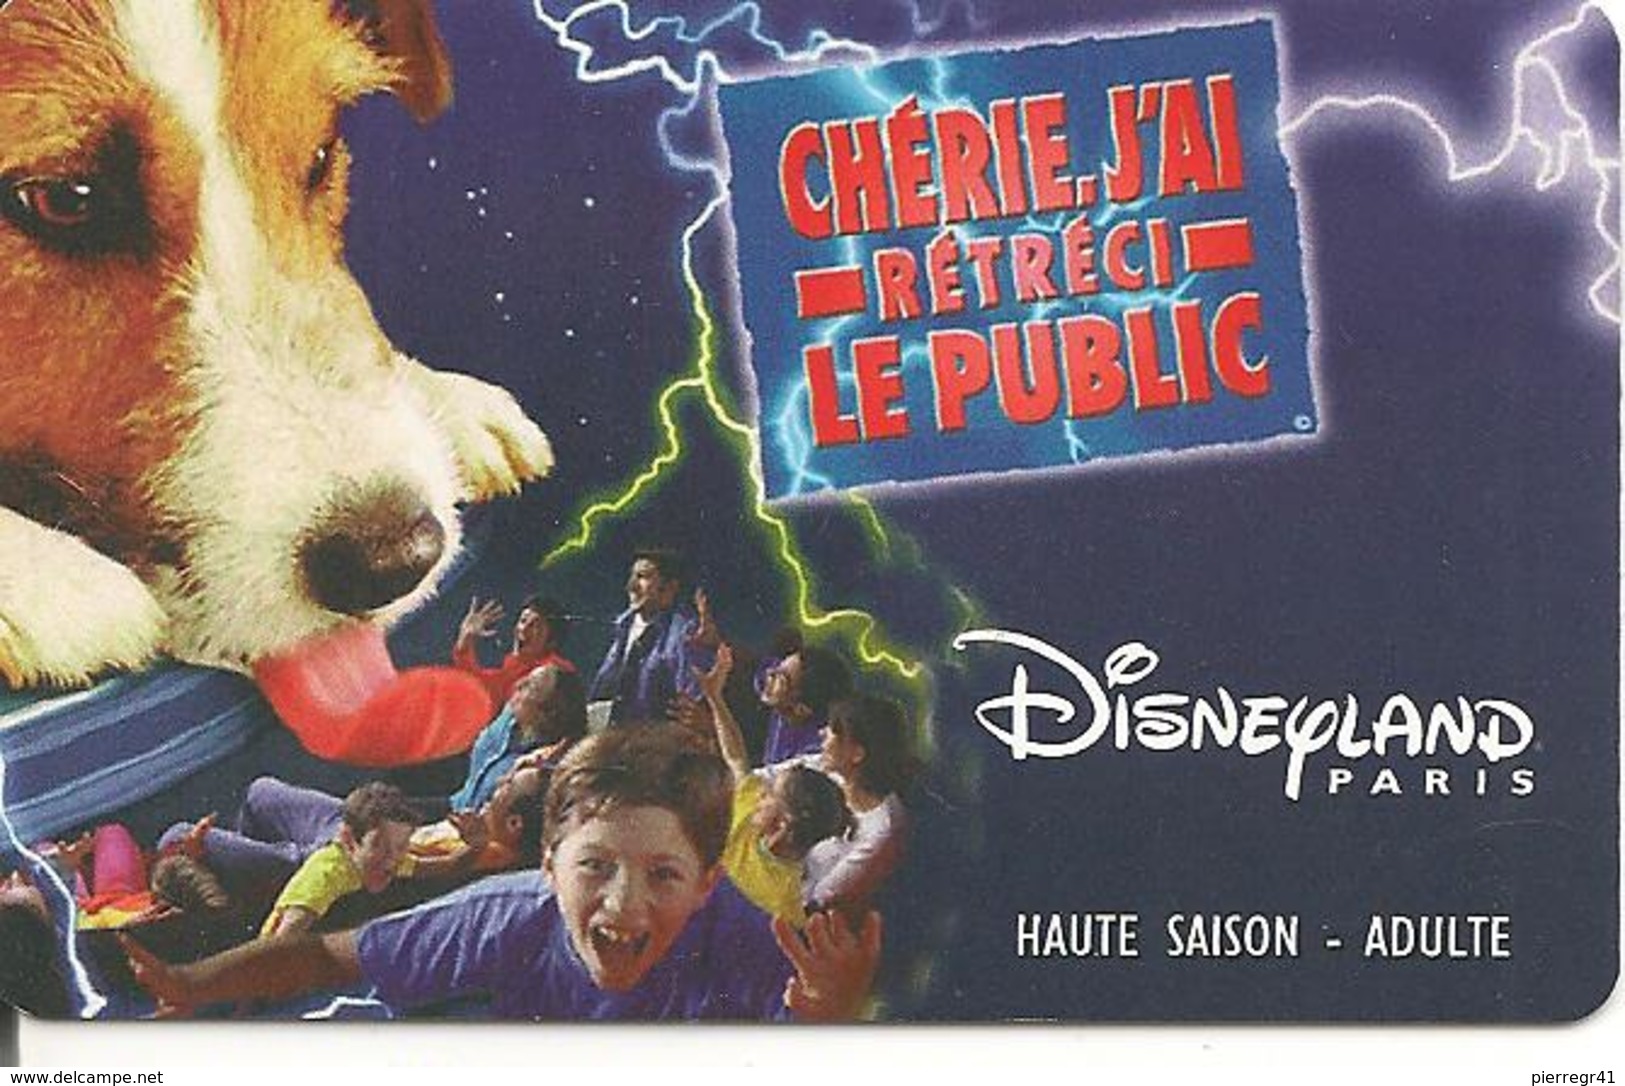 PASS-DISNEYLANDPARIS -1999-CHERIE J AI RETRECI LE PUB-ADULTE-V°VIOLET/Clair PARME-Speos-99/06/HOA-MKC VALIDE 1 JOUR-TBE- - Disney-Pässe